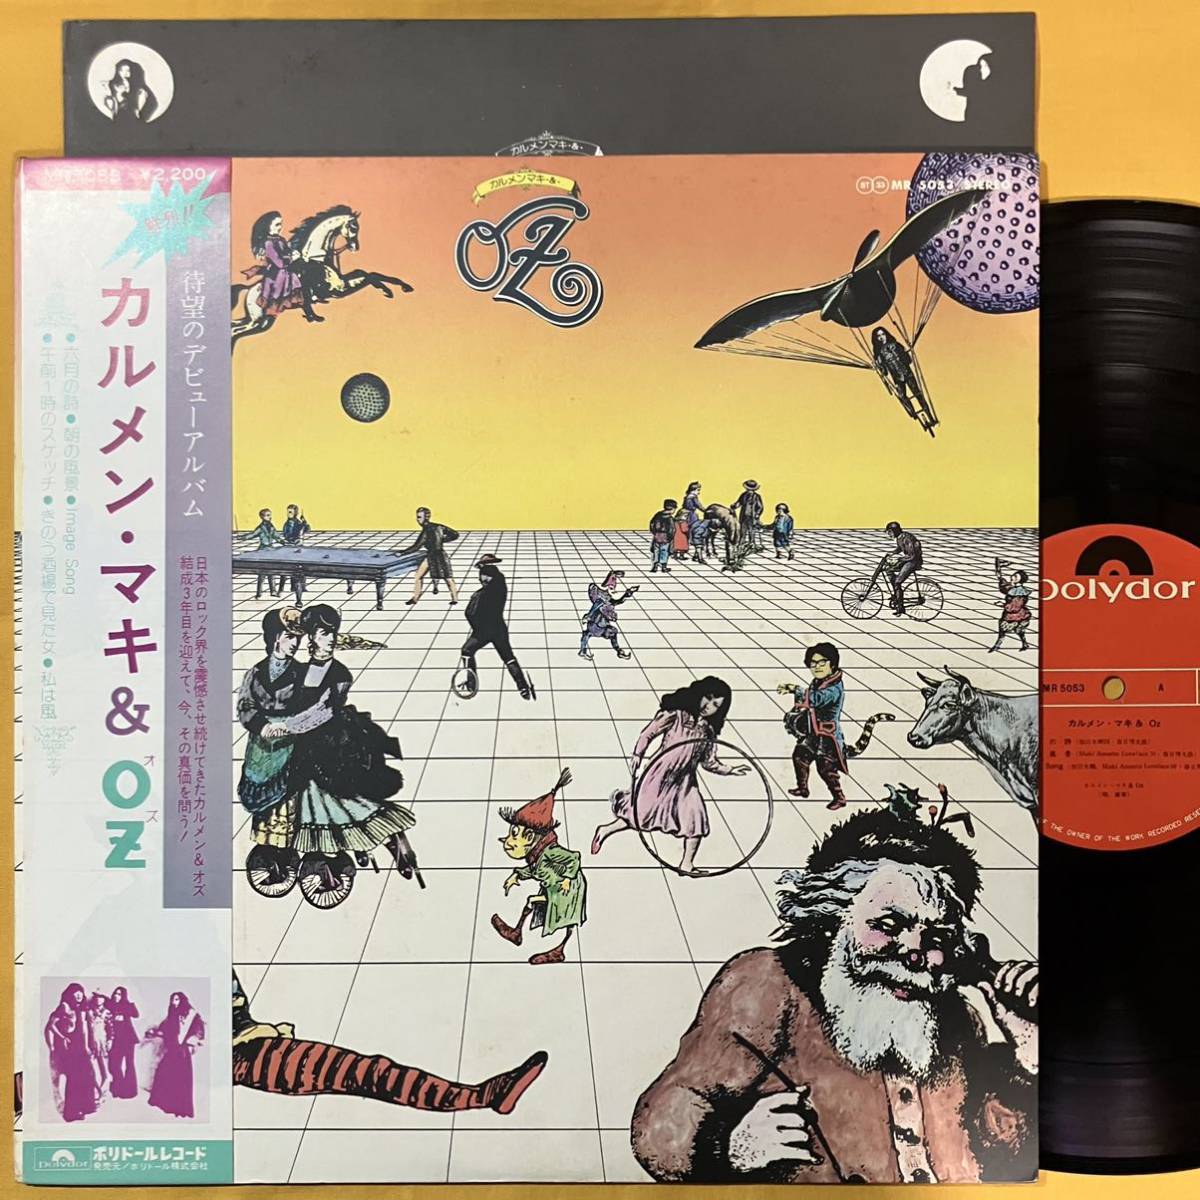 SALE 10H 帯付き カルメンマキ & OZ / S.T. MR5053 LP レコード アナログ盤_画像1